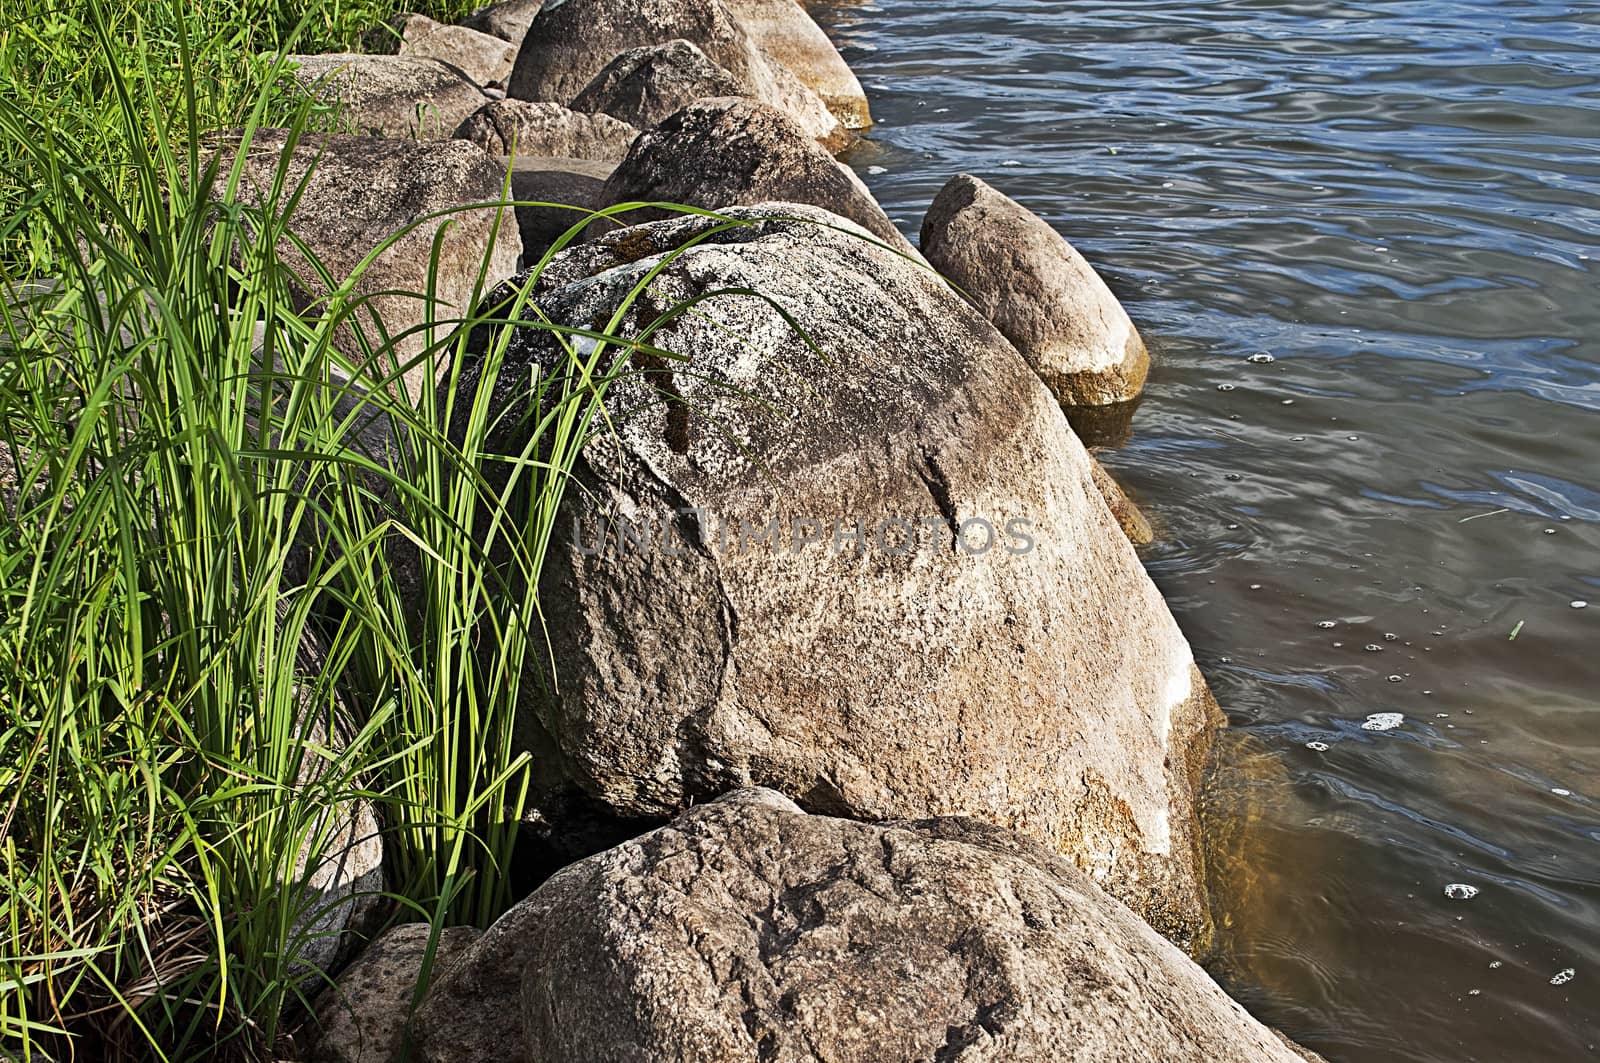 Boulders at the lake bank by wander